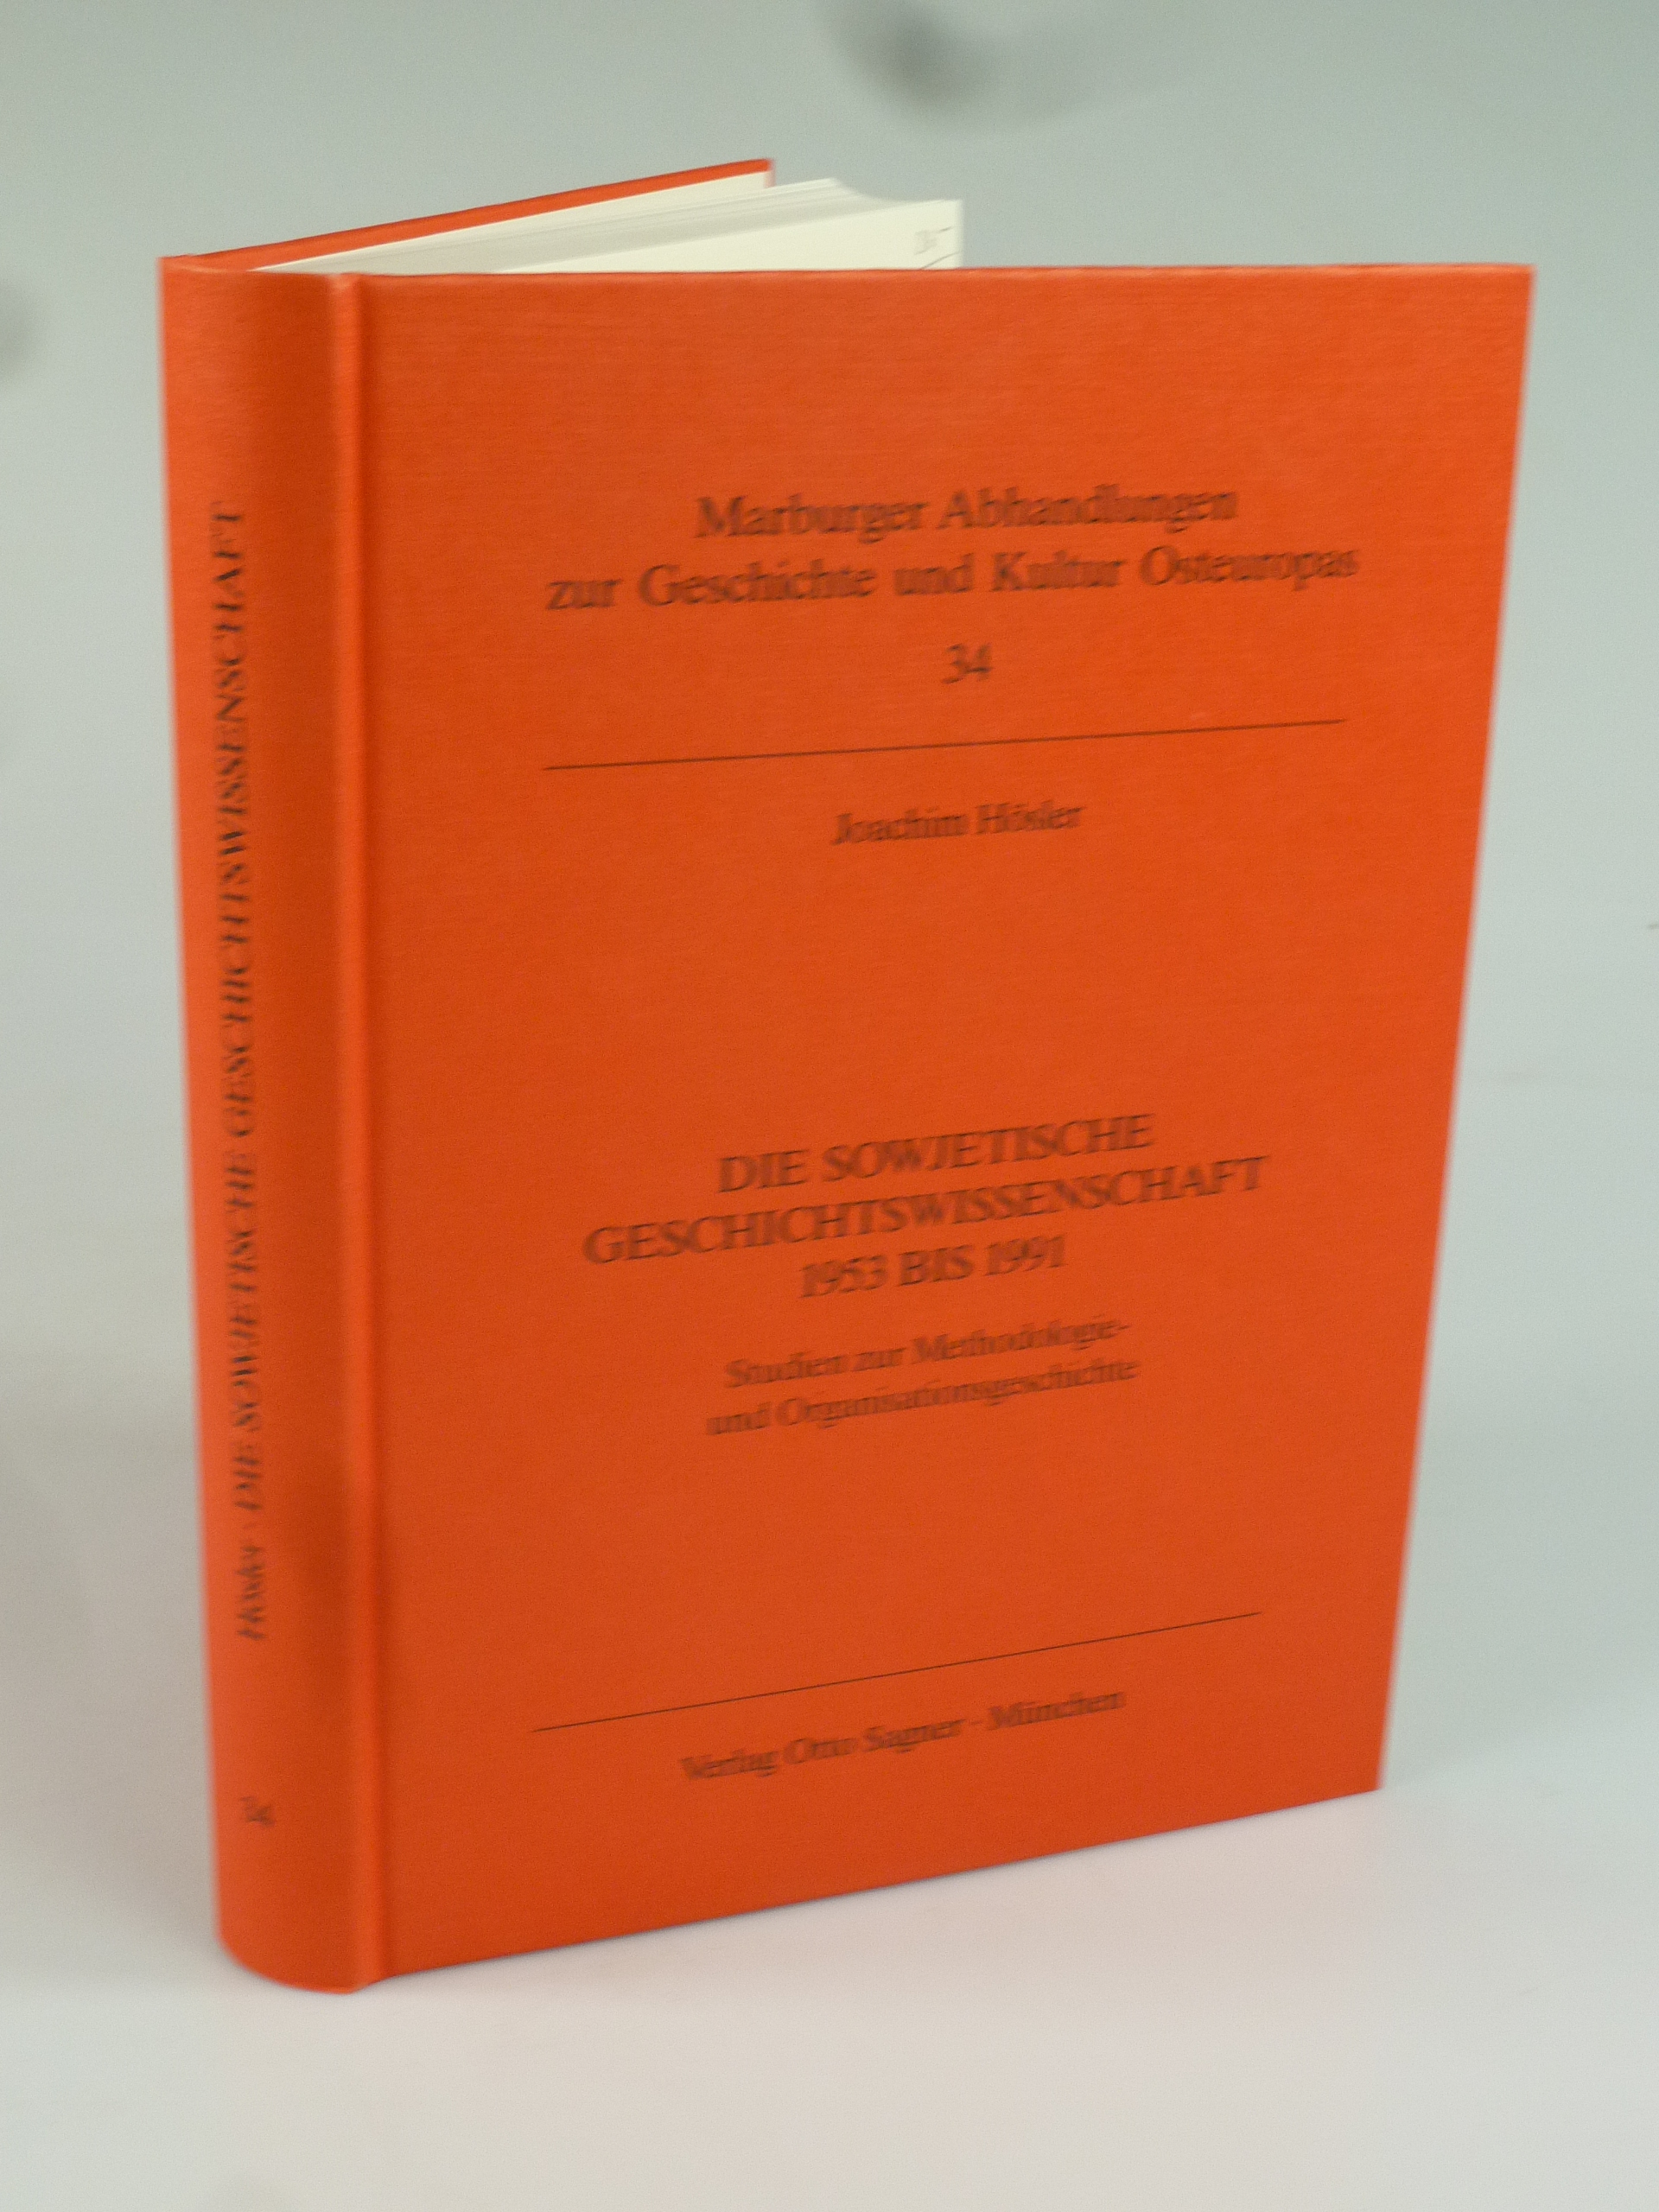 Die sowjetische Geschichtswissenschaft 1953 bis 1991. - HÖSLER, Joachim.